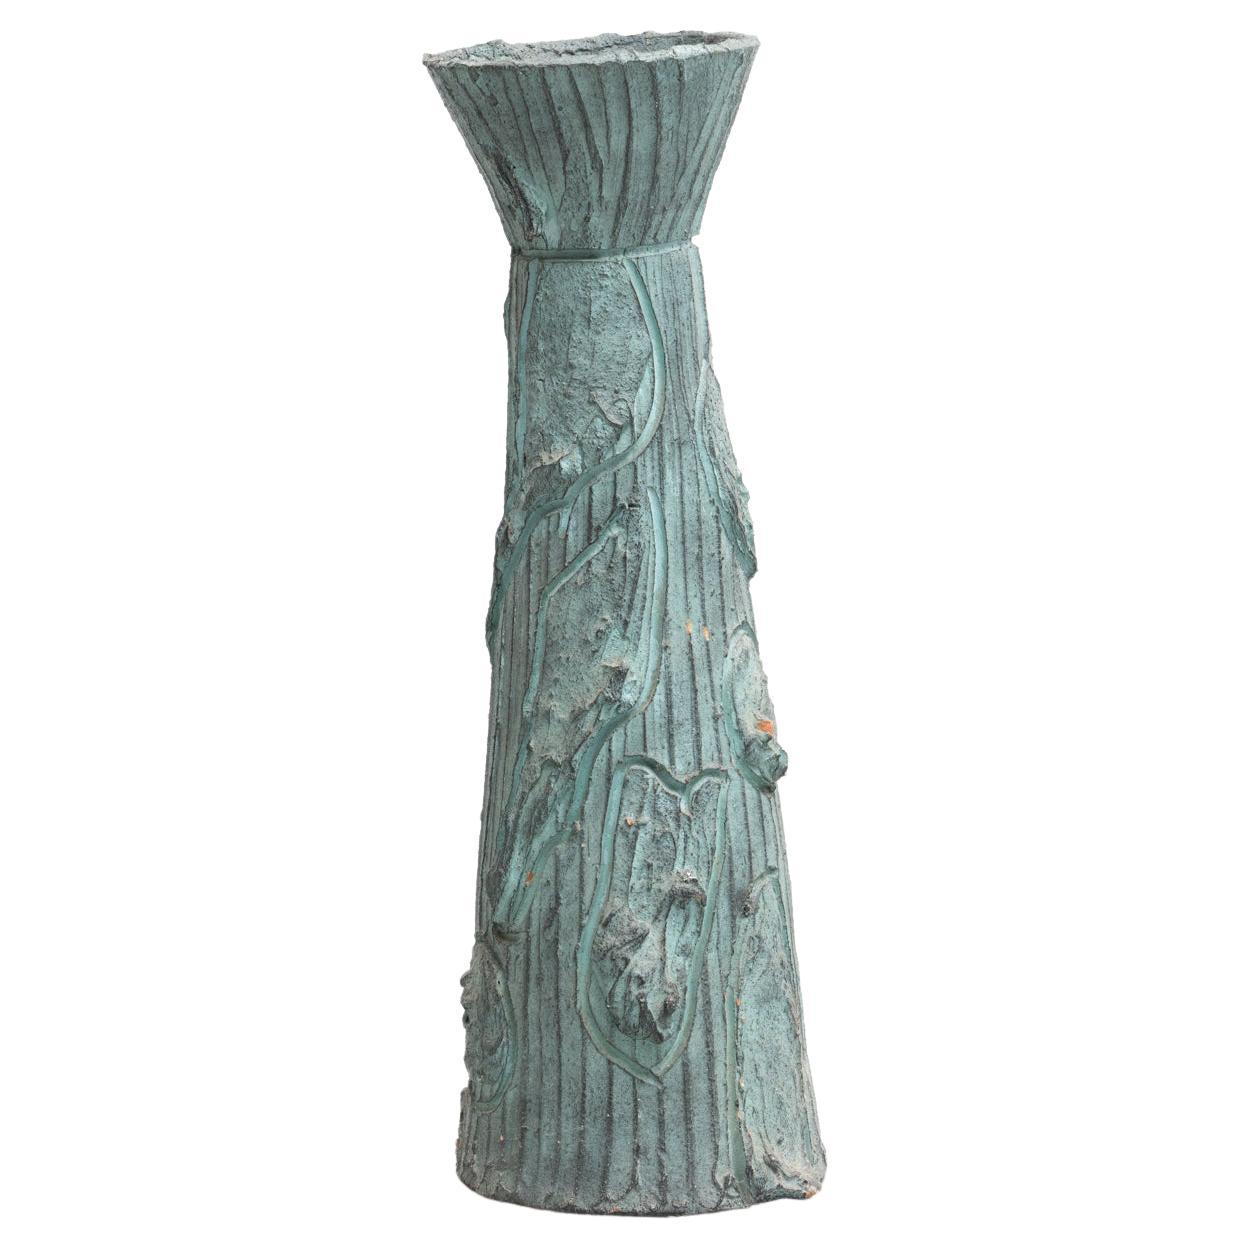 Ceramic Hand Painted Vase, circa 1960